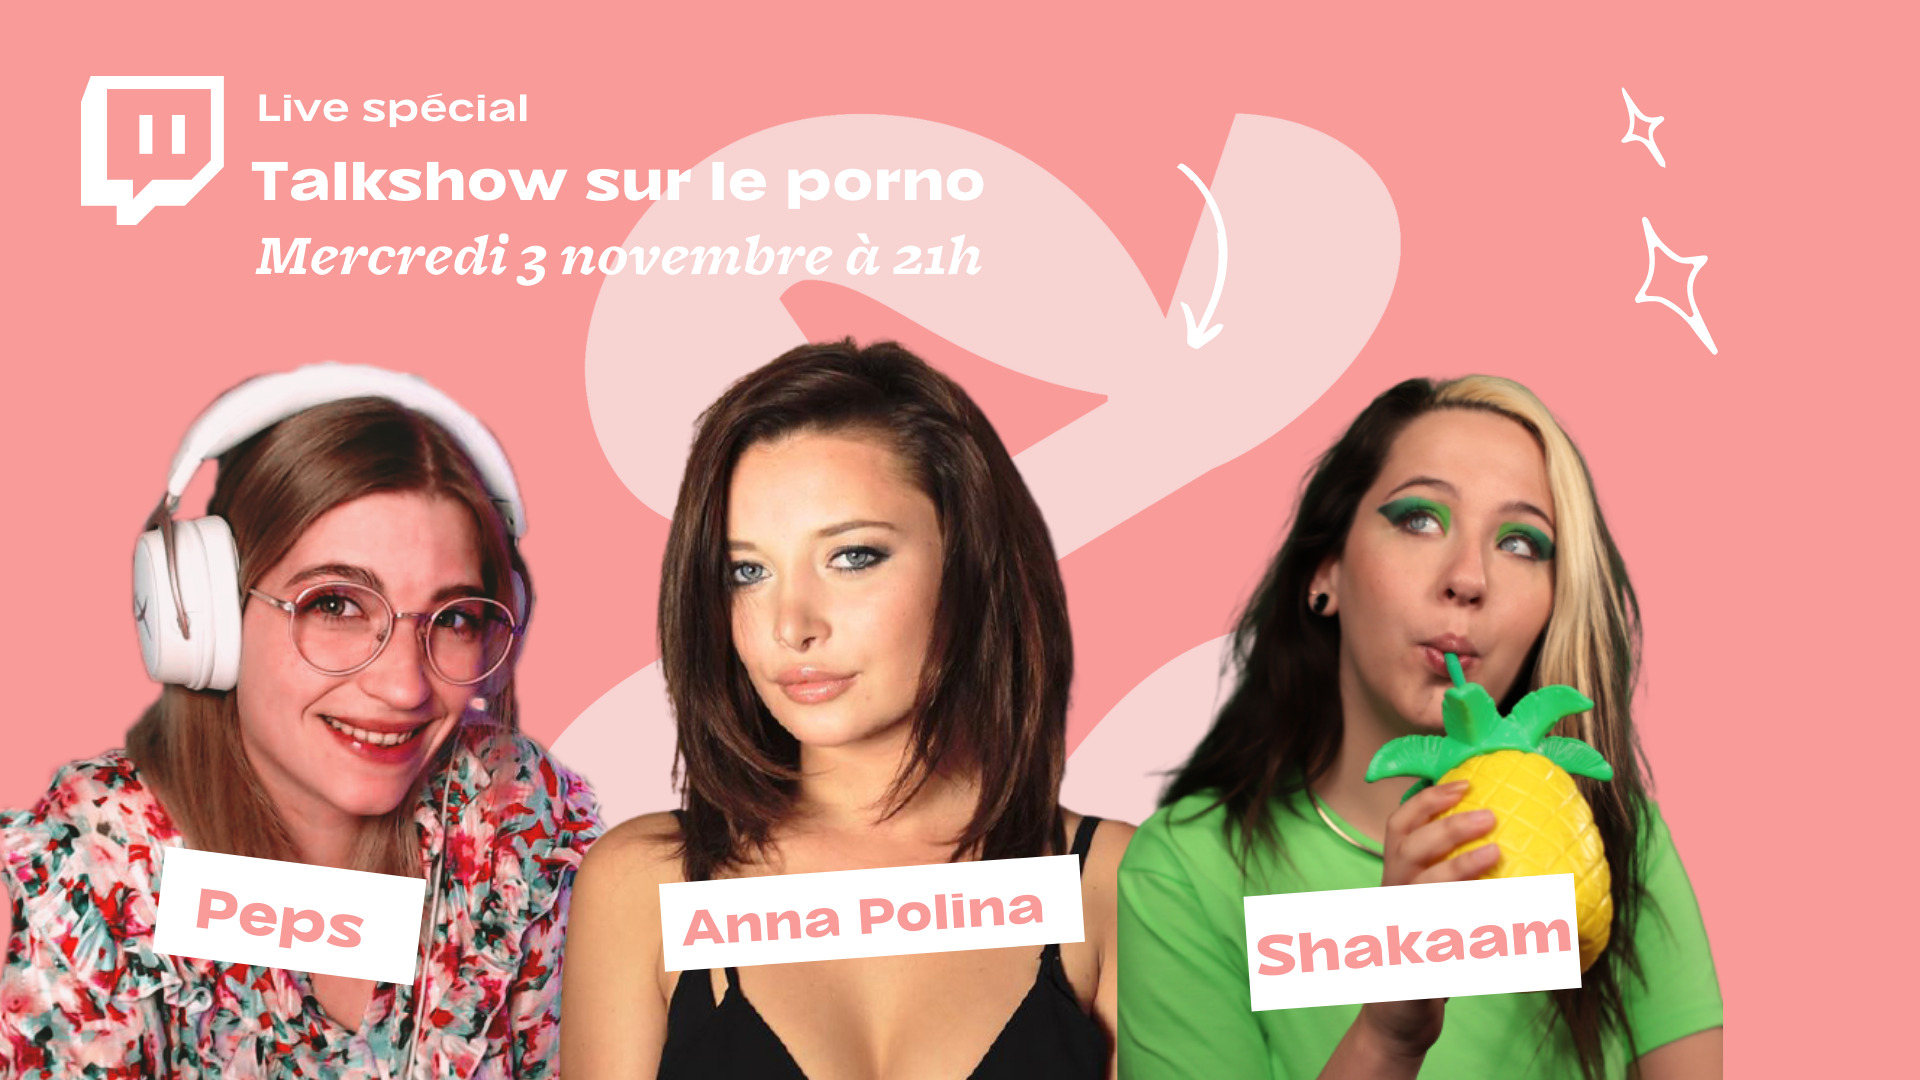 Le talk-chaud du moment sur l’industrie du porn, c’est ce mercredi avec Anna Polina sur Twitch !